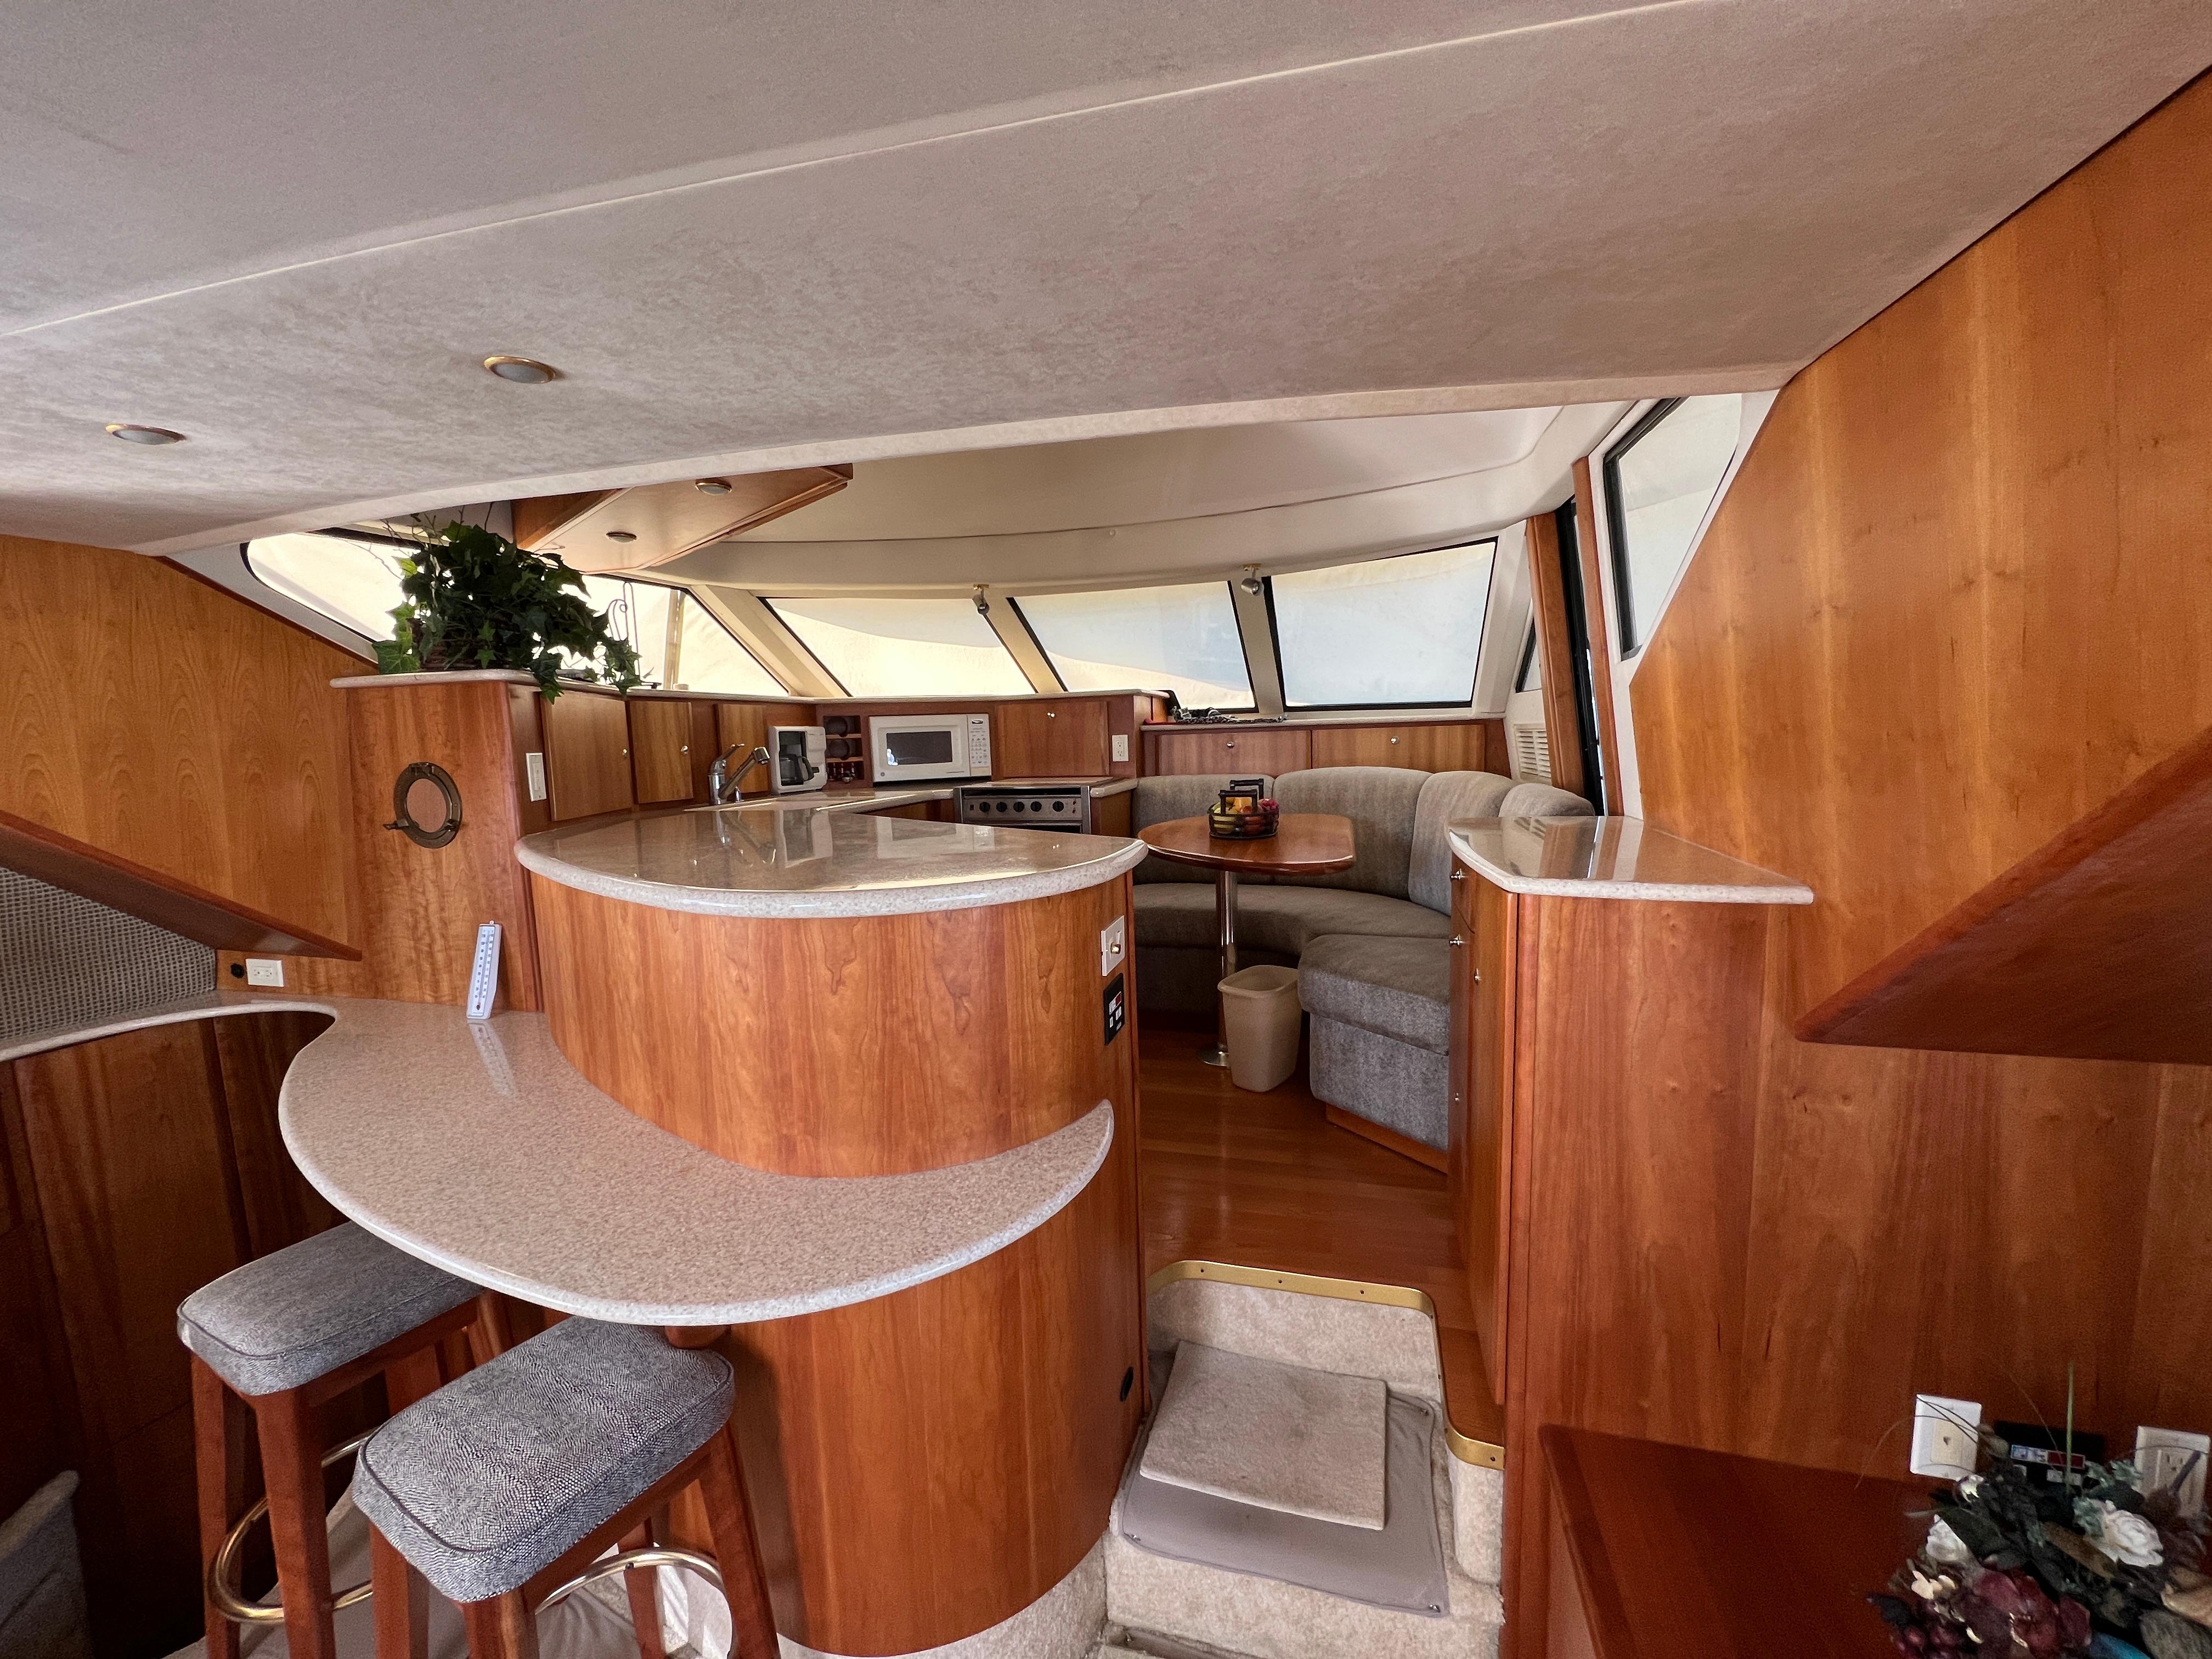 DURENDA LEE Yacht Brokers Of Annapolis